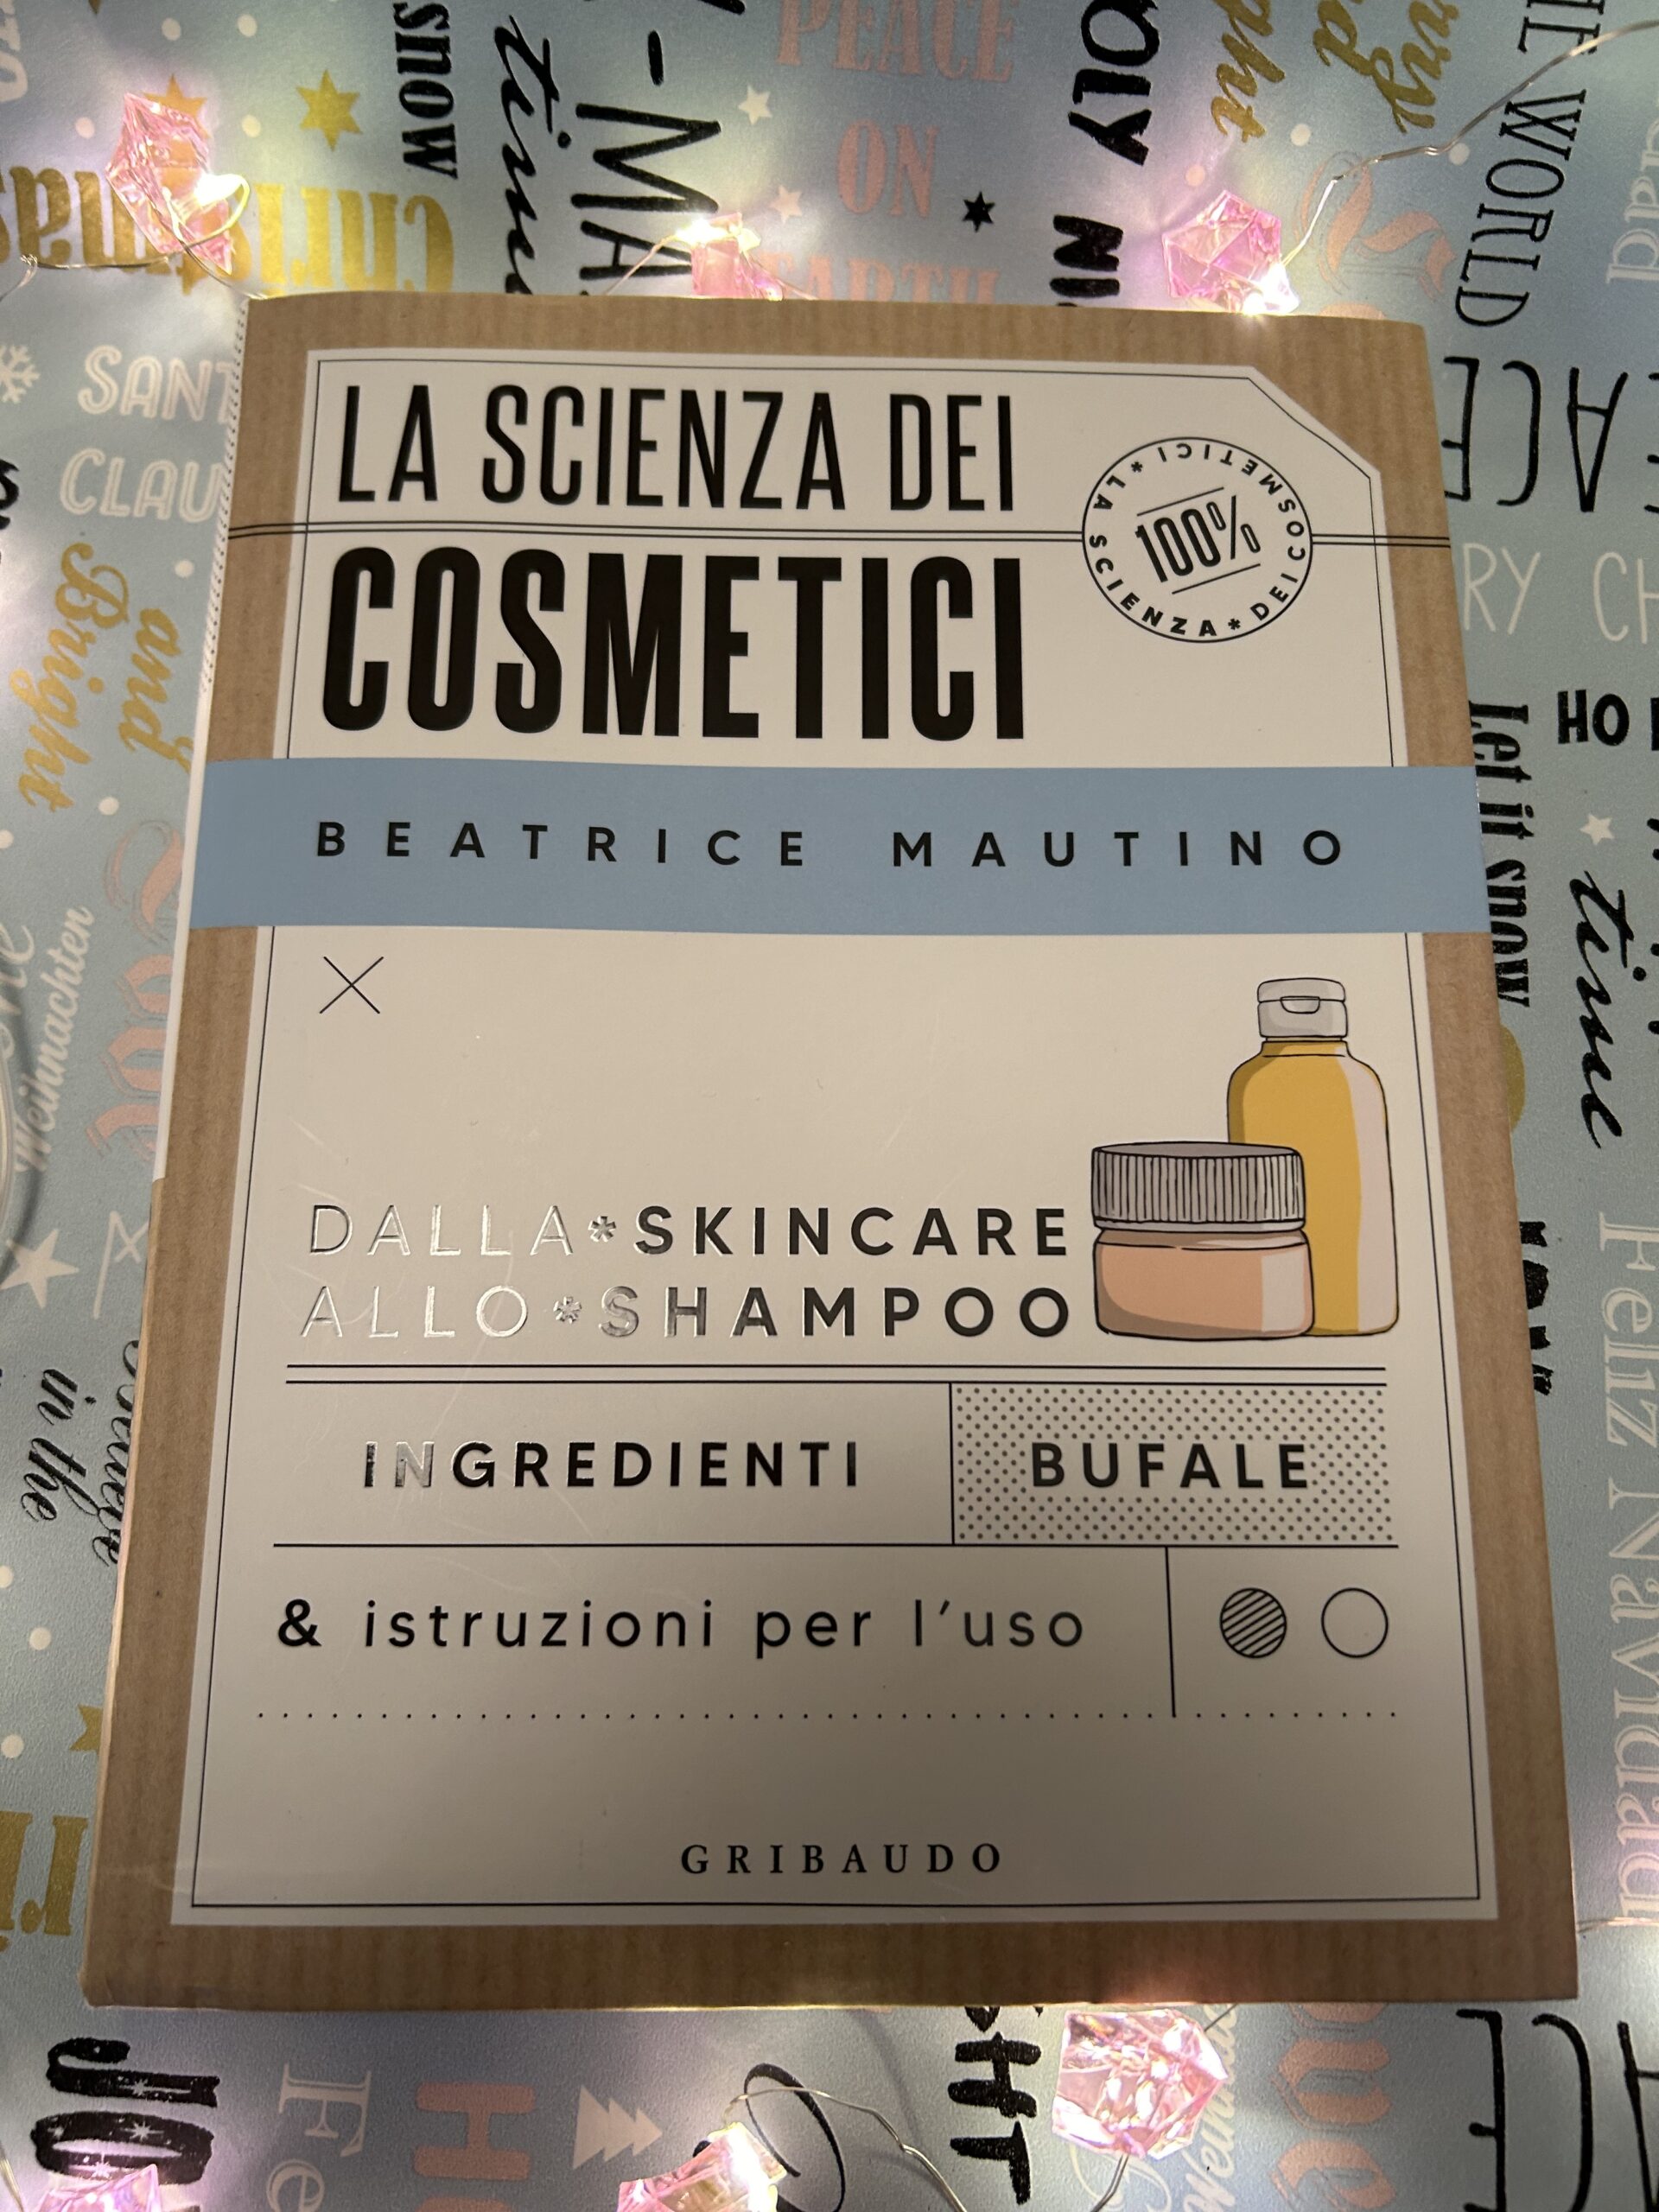 La scienza dei cosmetici… a chi regalarlo e perché